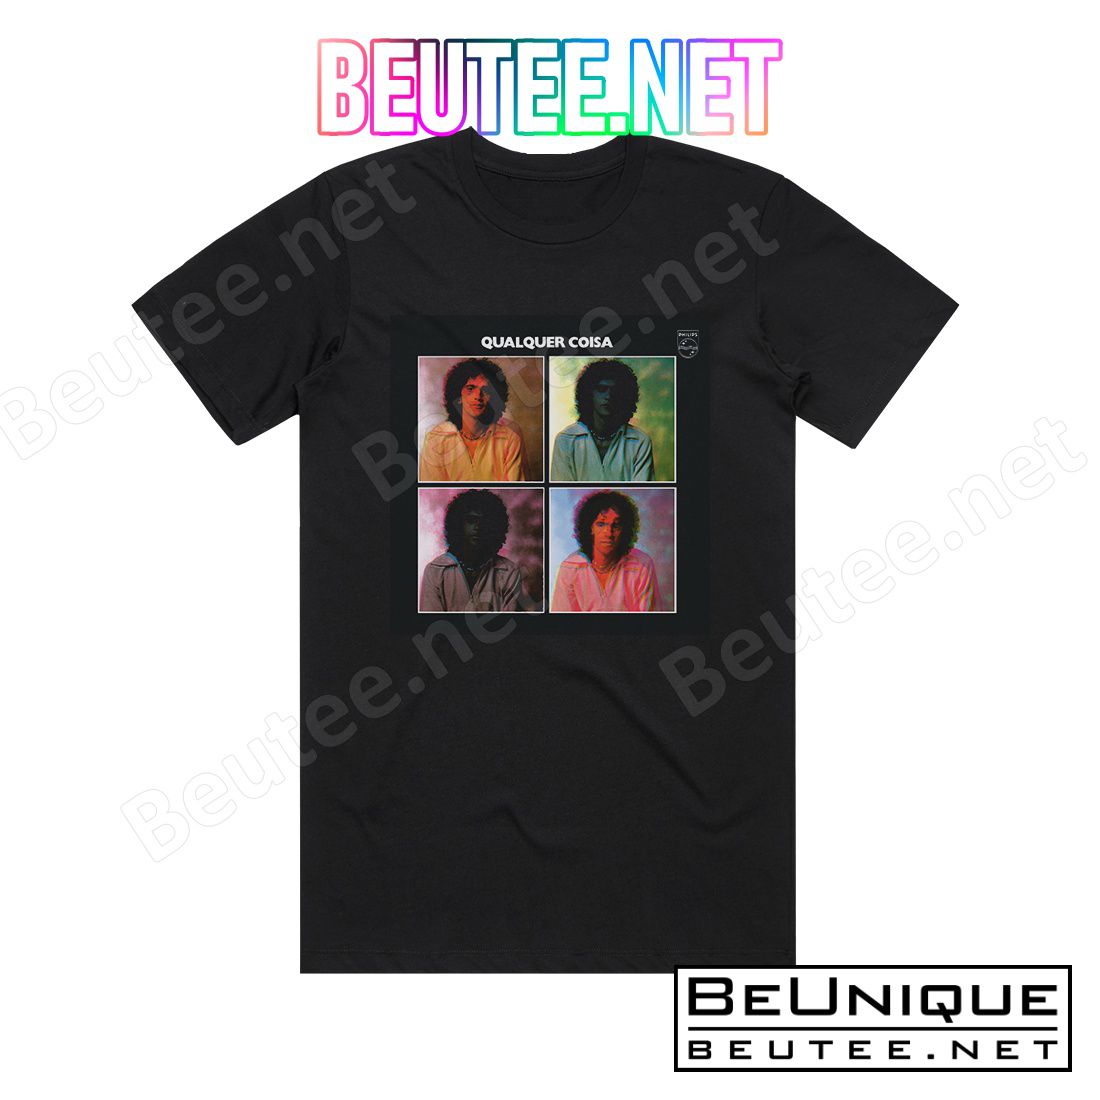 Caetano Veloso Qualquer Coisa Album Cover T-Shirt